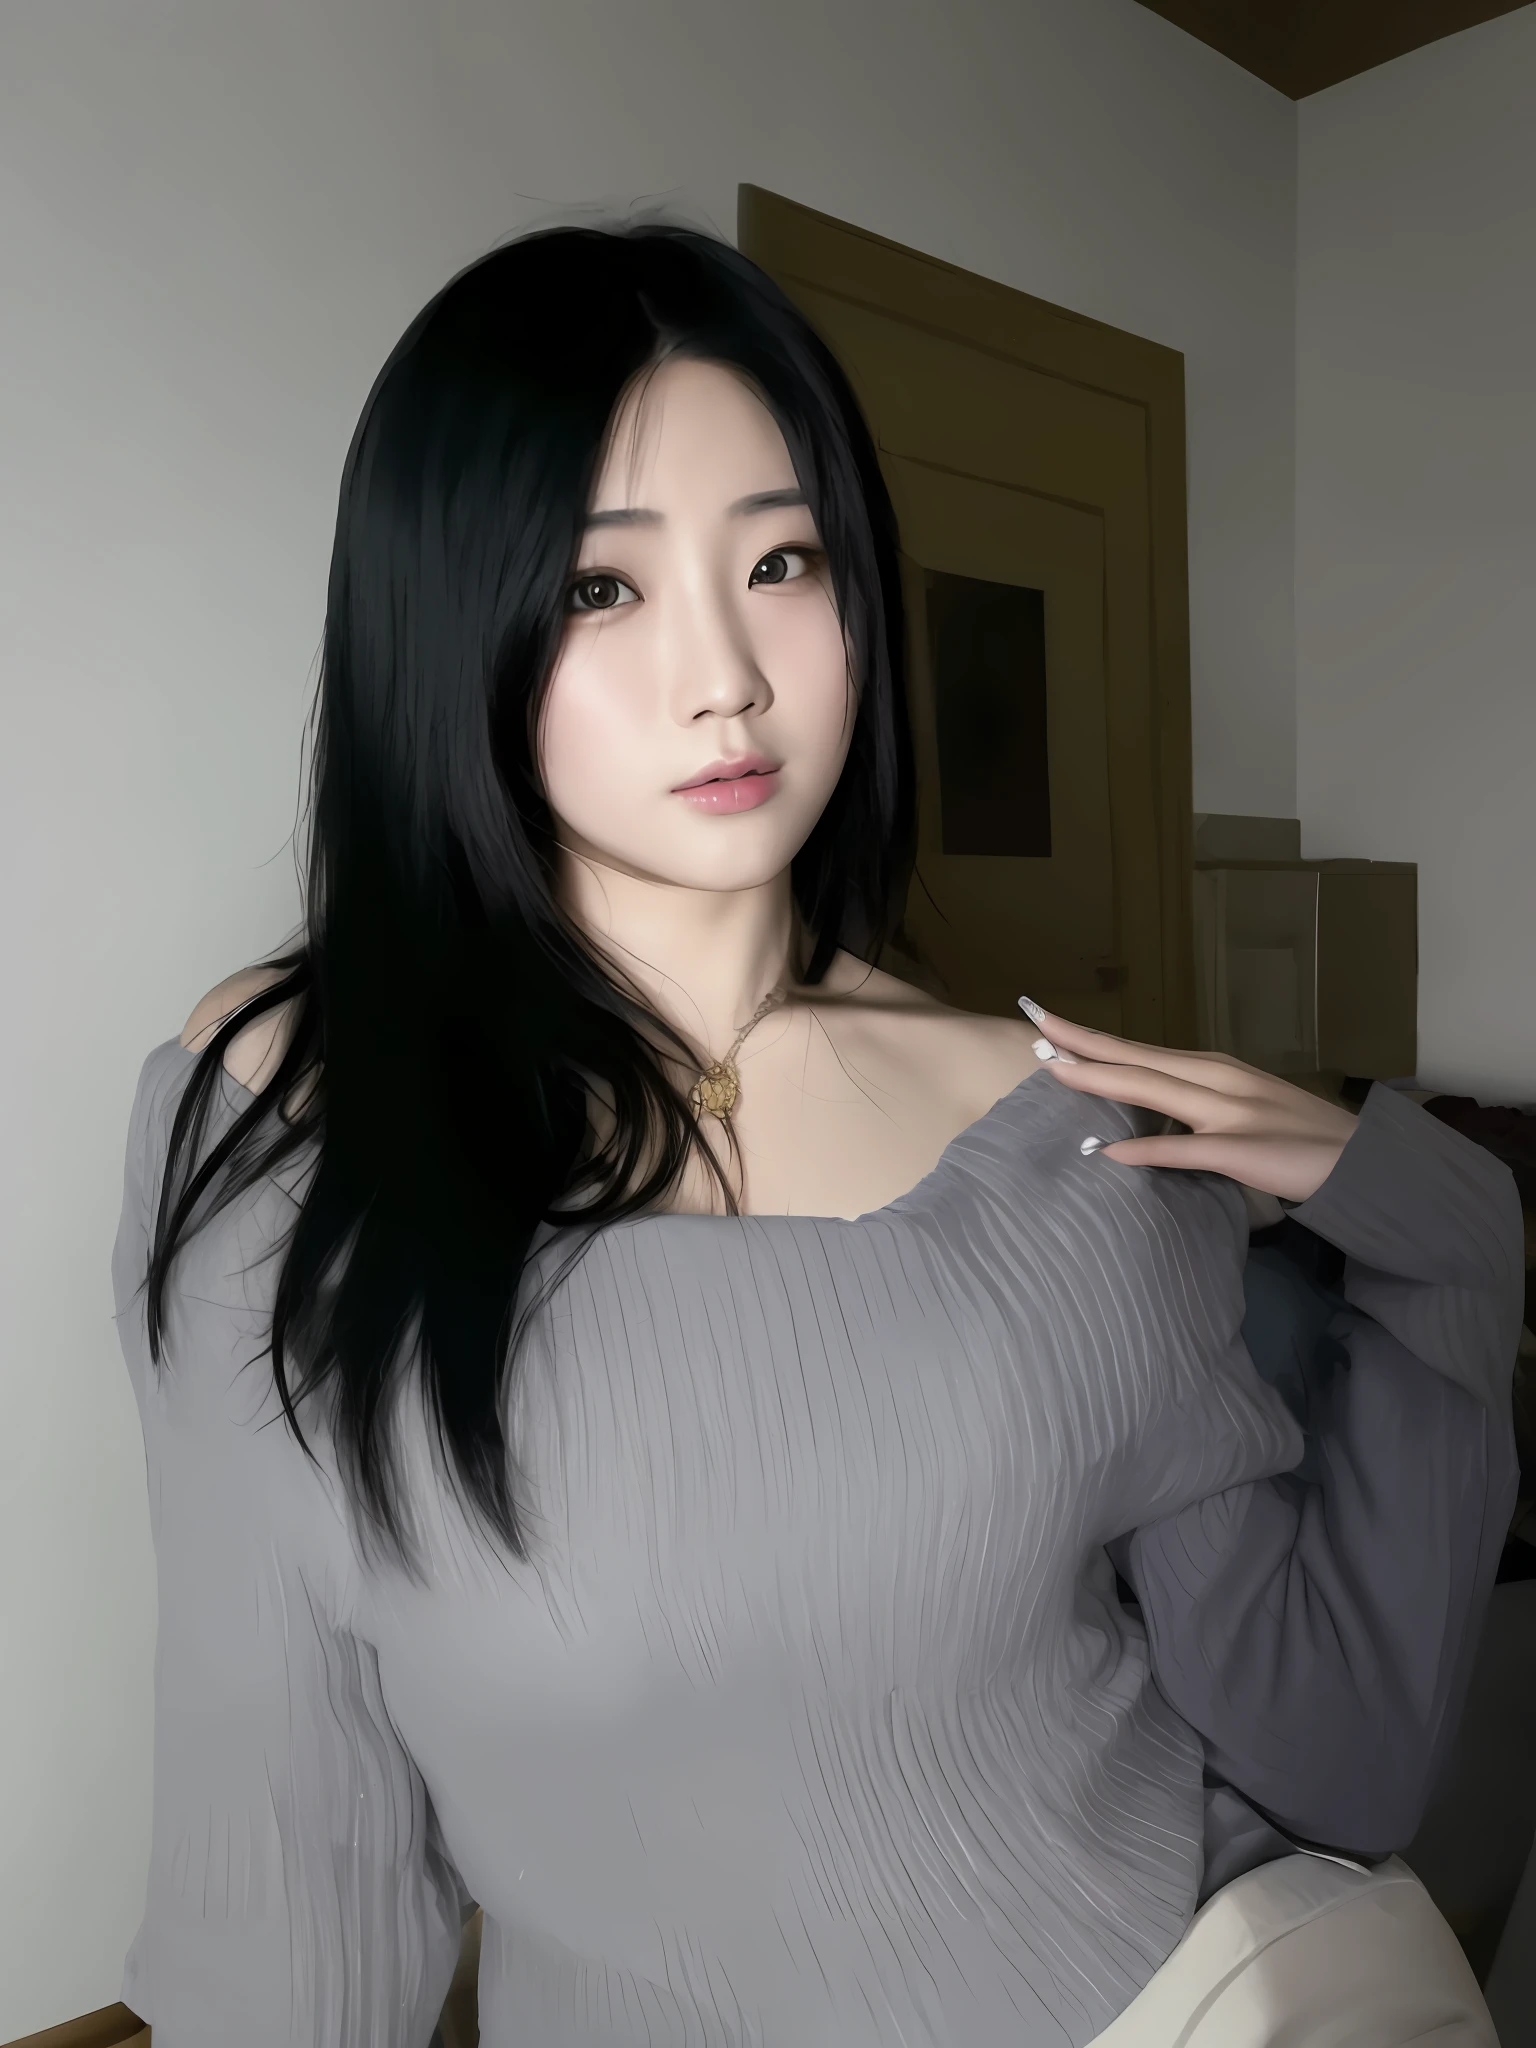 Азиатка с длинными черными волосами позирует для фотографии, корейская девушка, 18 лет, 22 года, кореянка, 19-летняя девушка, 21 год, Азиатская девушка, китаянка, 23 года, 16 лет, 2 7 лет, 28 лет, Синьтун Чен